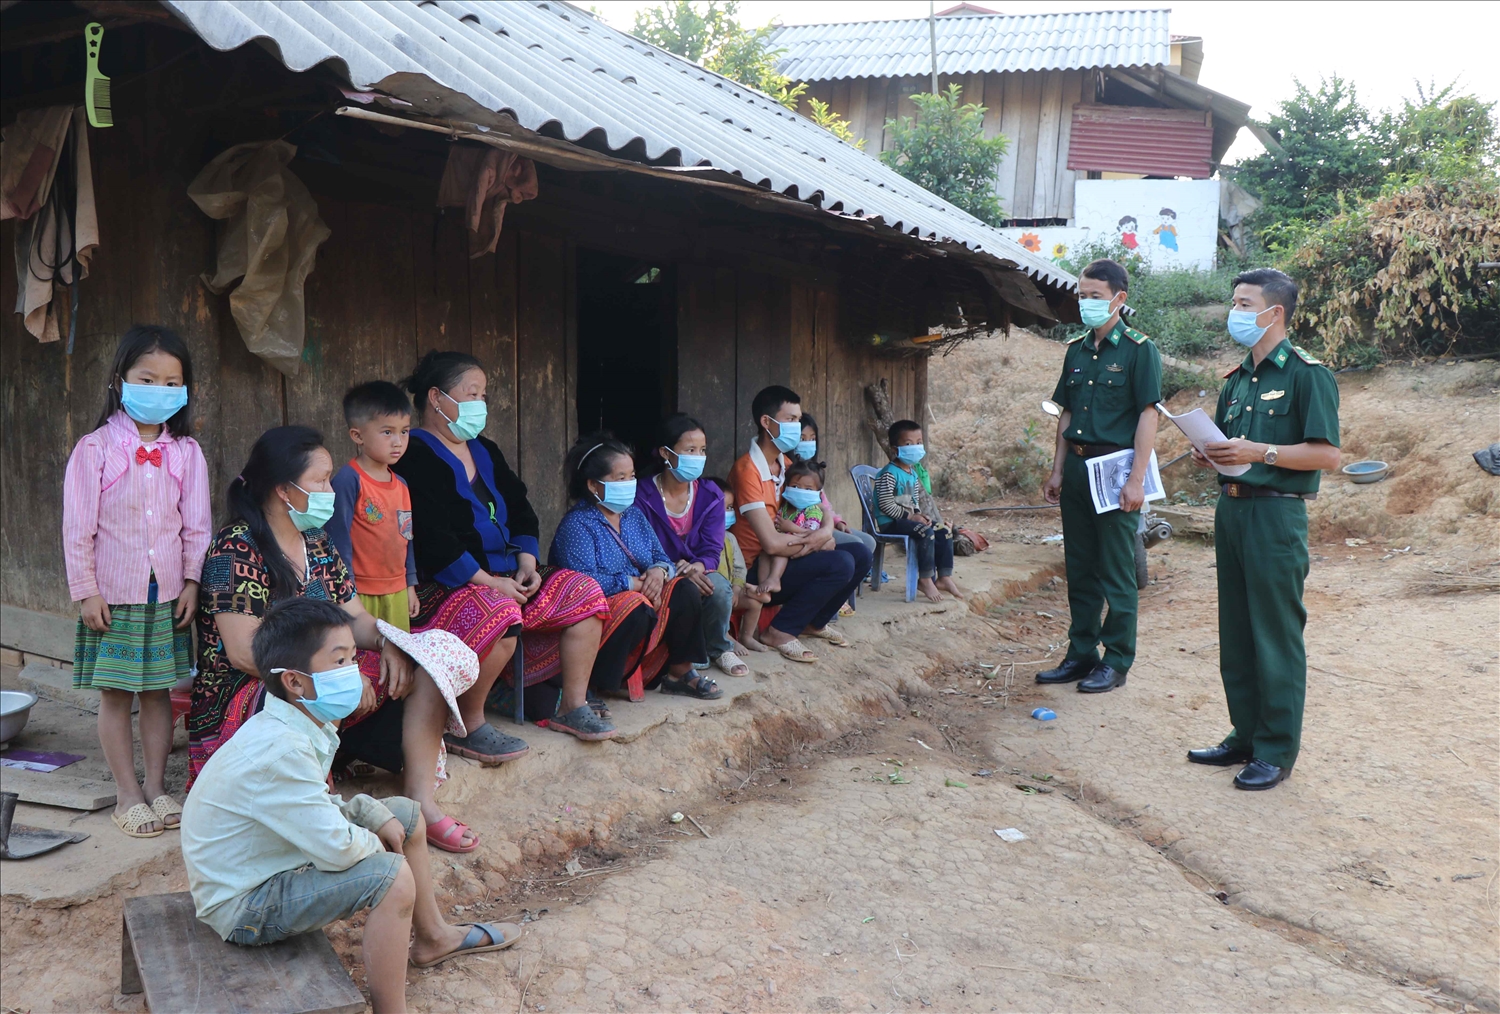 Cán bộ Đồn Biên phòng Mường Pồn, Bộ đội Biên phòng tỉnh Điện Biên tuyên truyền pháp luật cho nhân dân trên khu vực biên giới